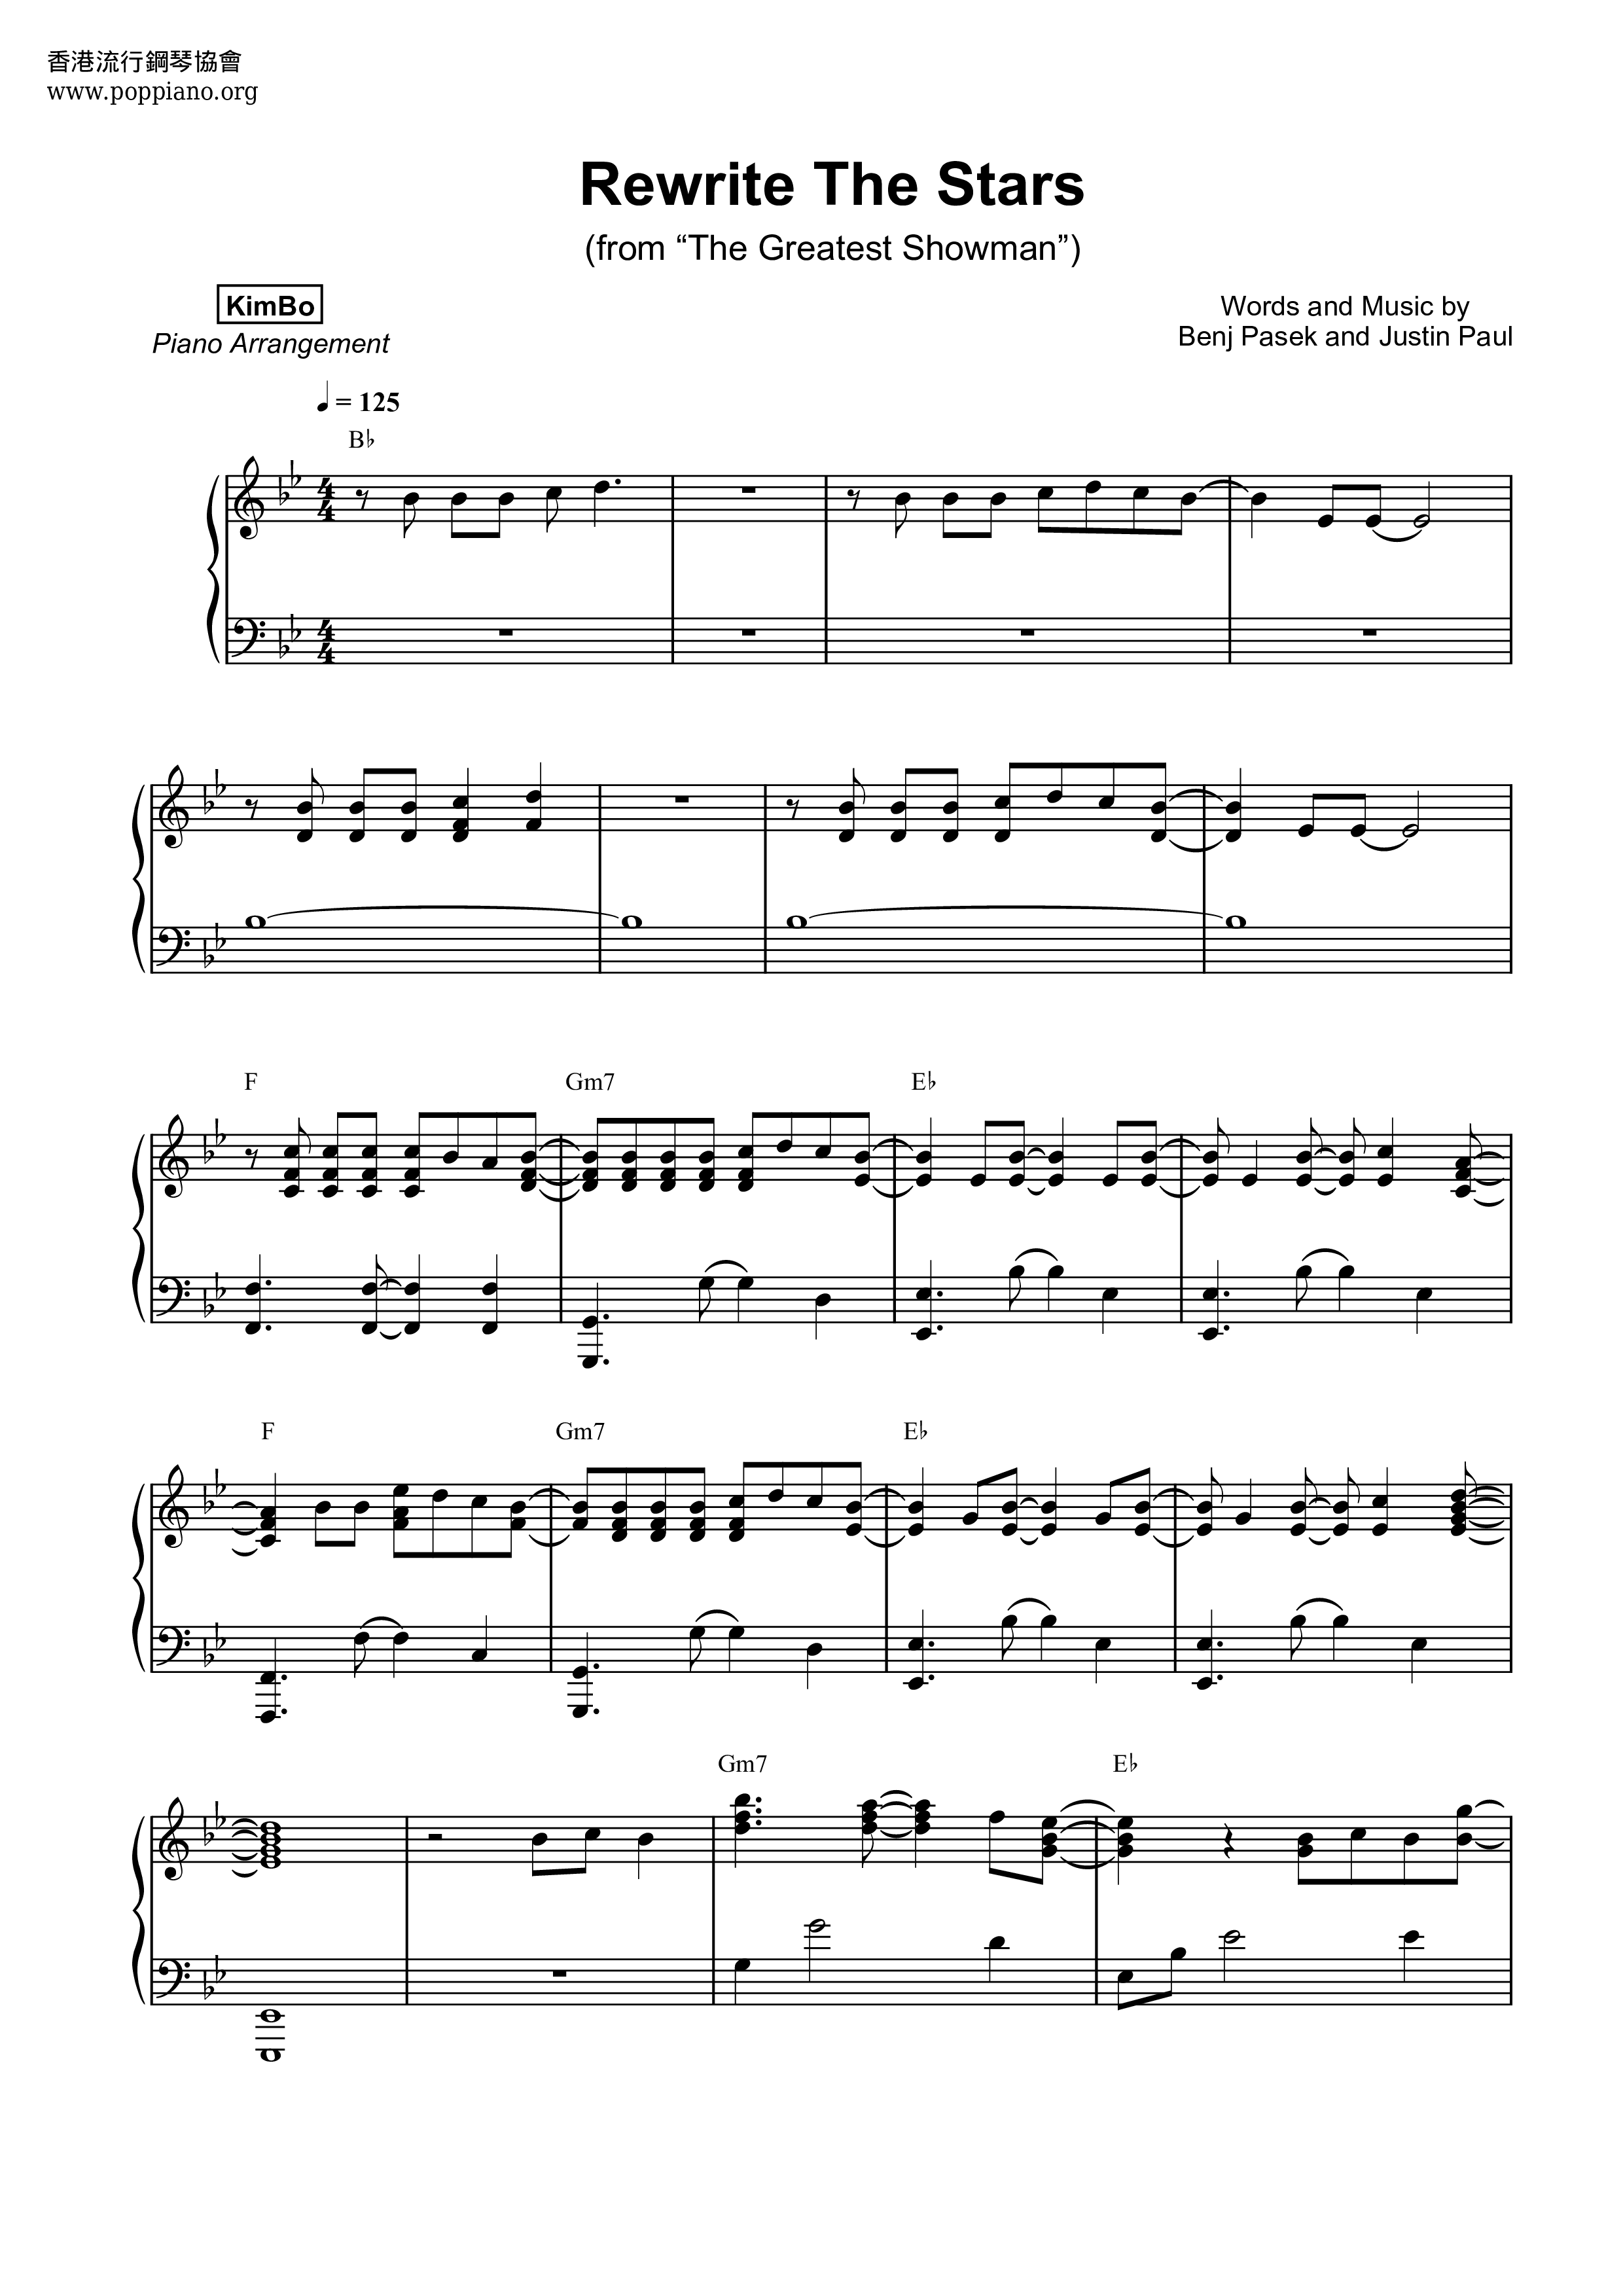 Emulación Superar Monarca ☆ Rewrite The Stars | Sheet Music | Piano Score Free PDF Download | HK Pop  Piano Academy